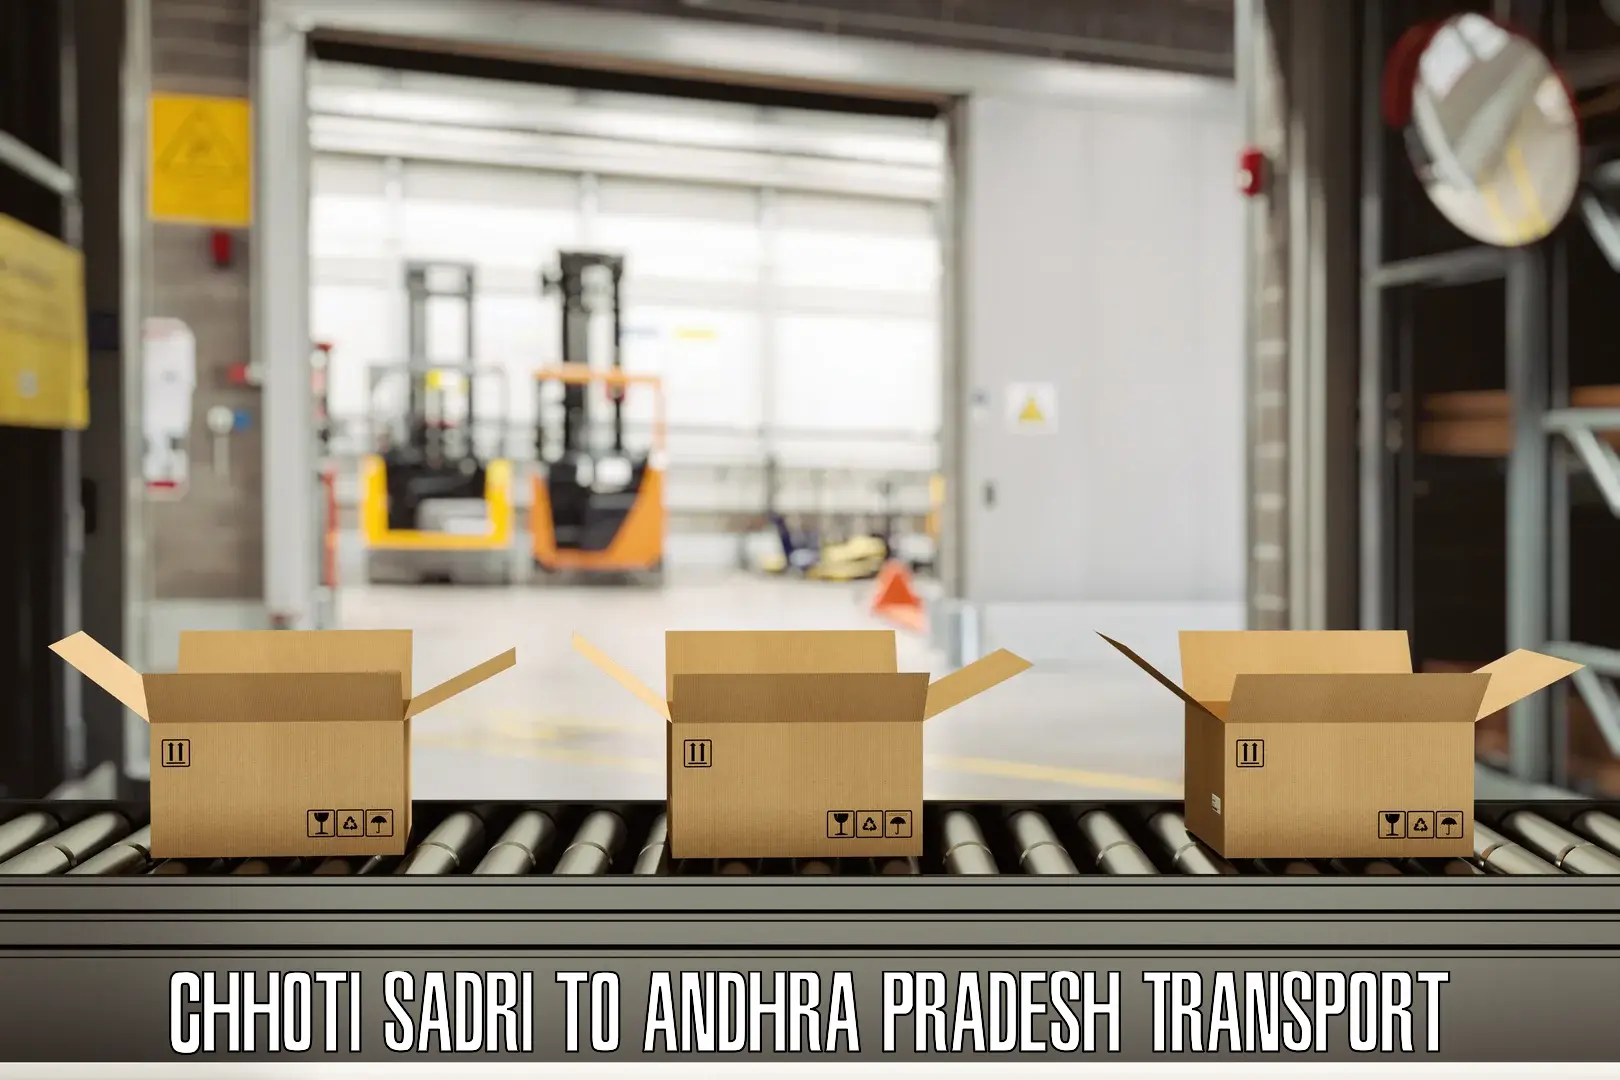 Shipping partner Chhoti Sadri to Annavaram